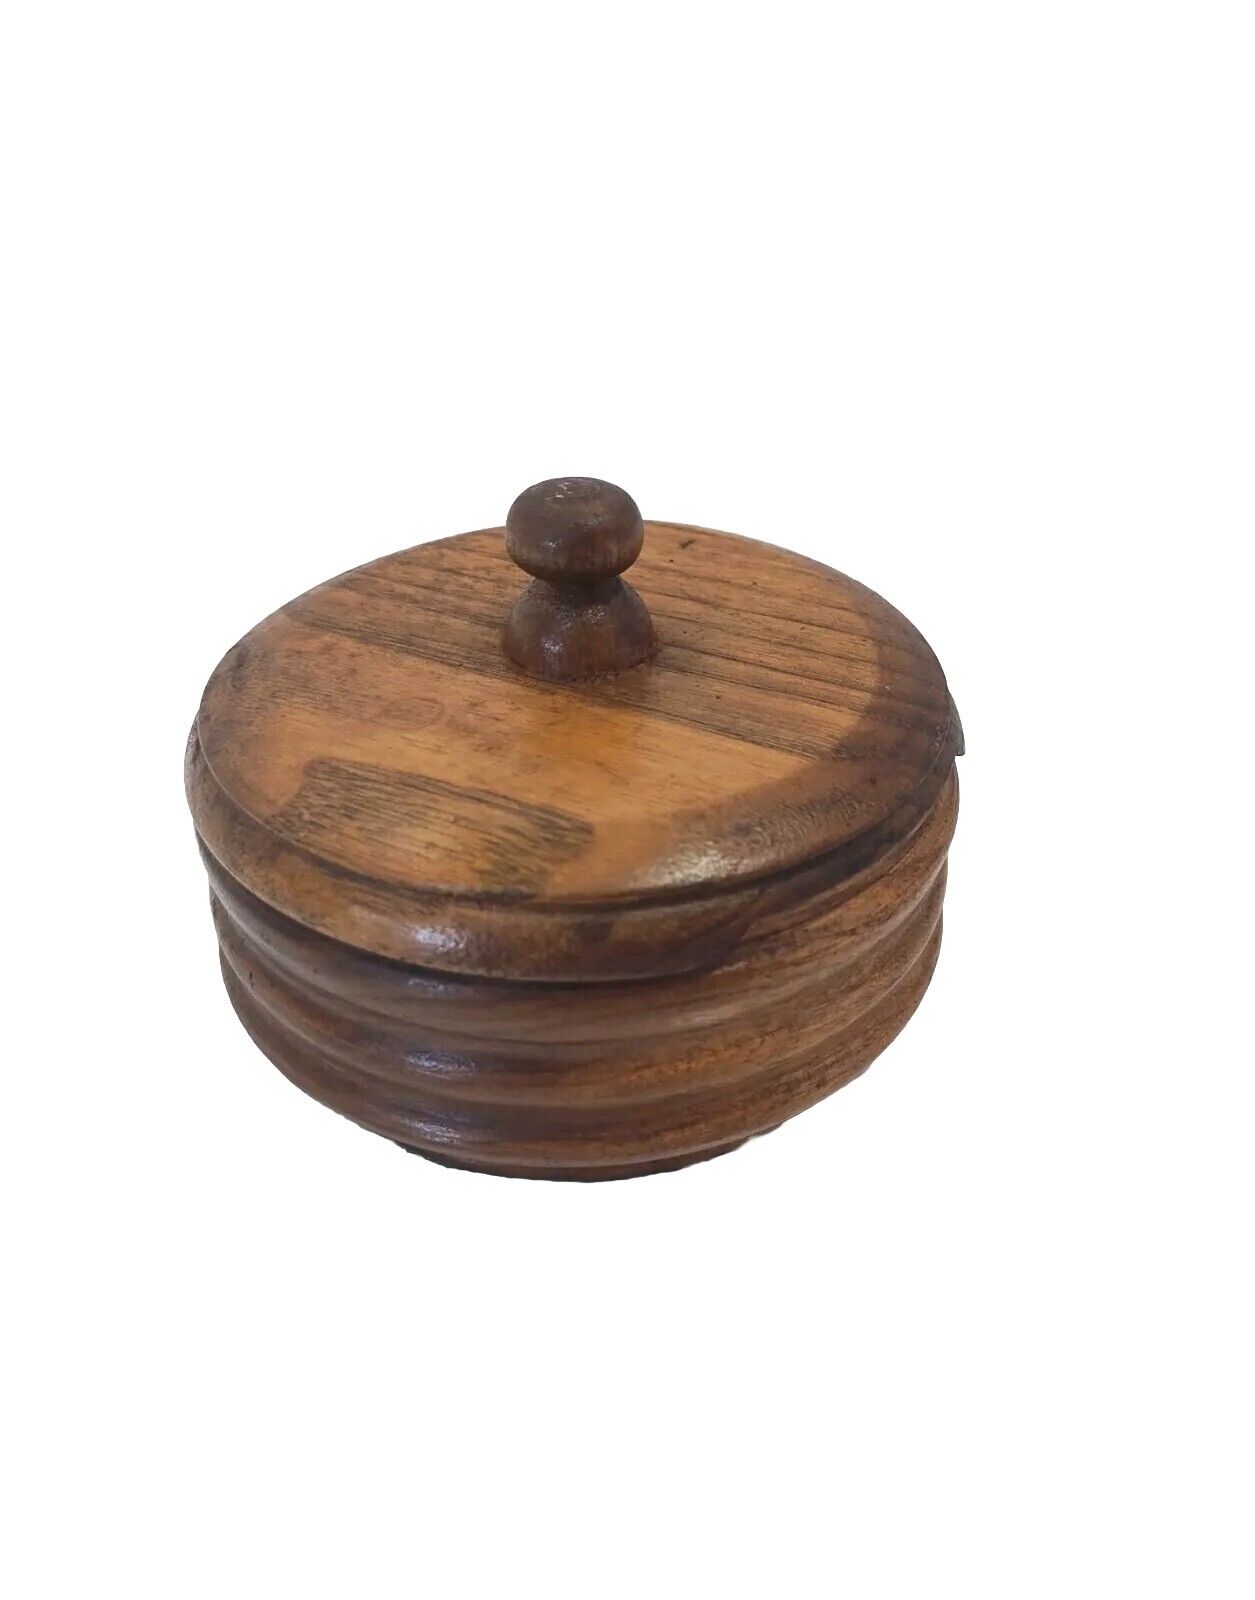 Vintage Wooden Trinket Box - Round